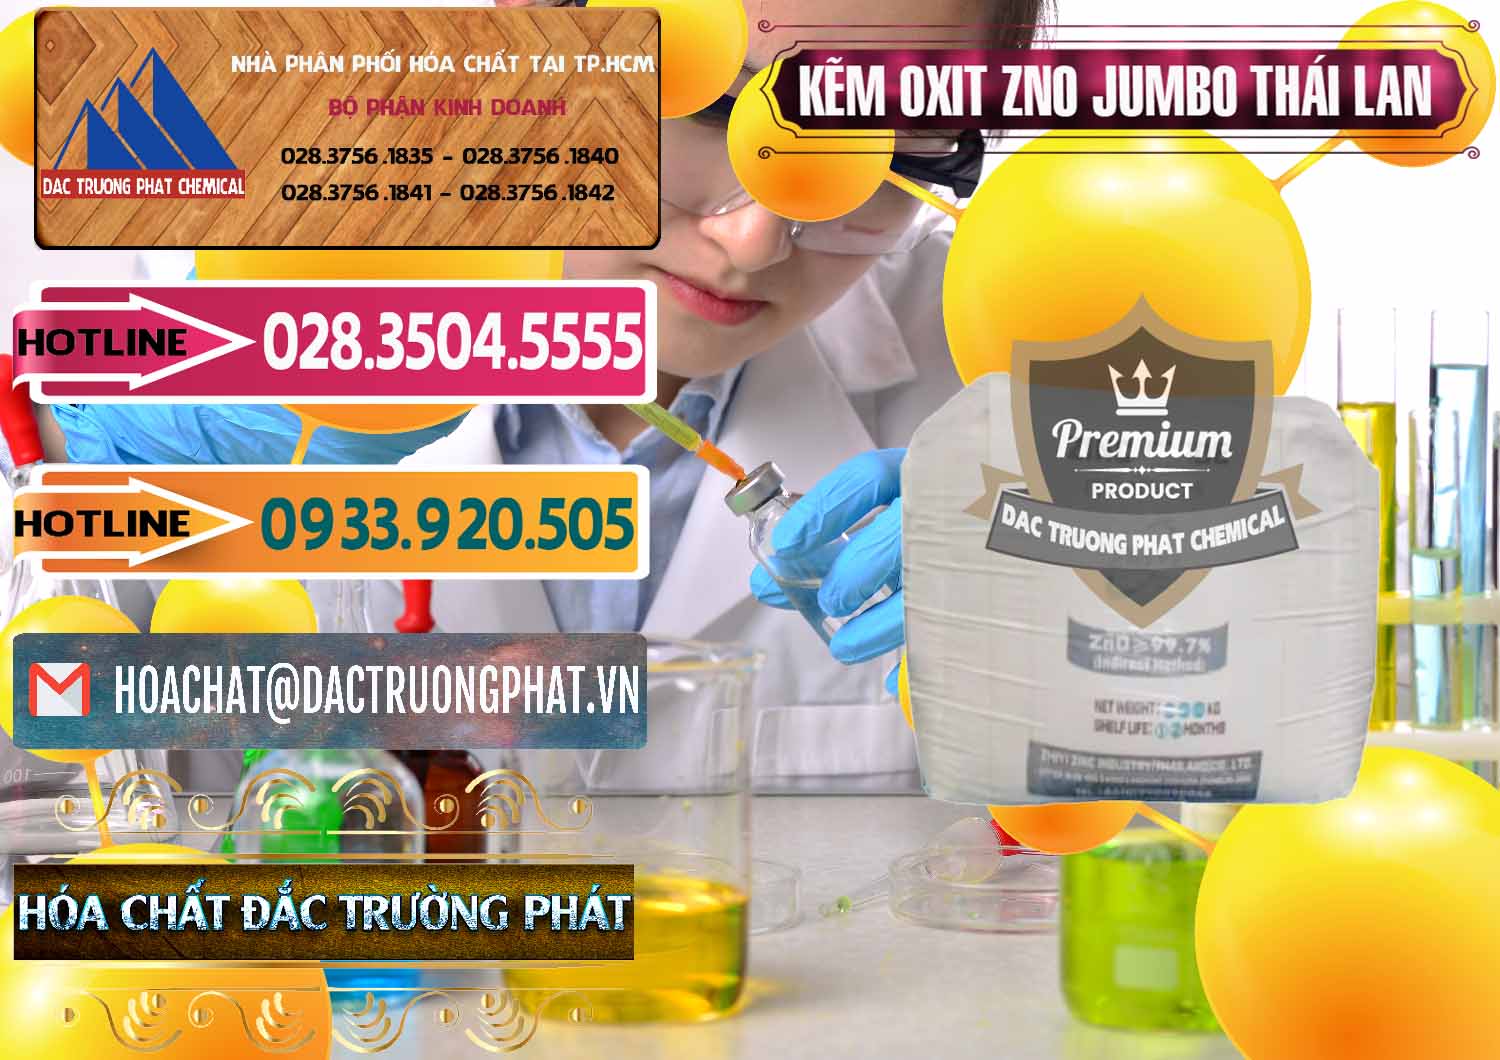 Công ty chuyên bán và cung cấp Zinc Oxide - Bột Kẽm Oxit ZNO Jumbo Bành Thái Lan Thailand - 0370 - Nơi chuyên cung ứng và phân phối hóa chất tại TP.HCM - dactruongphat.vn